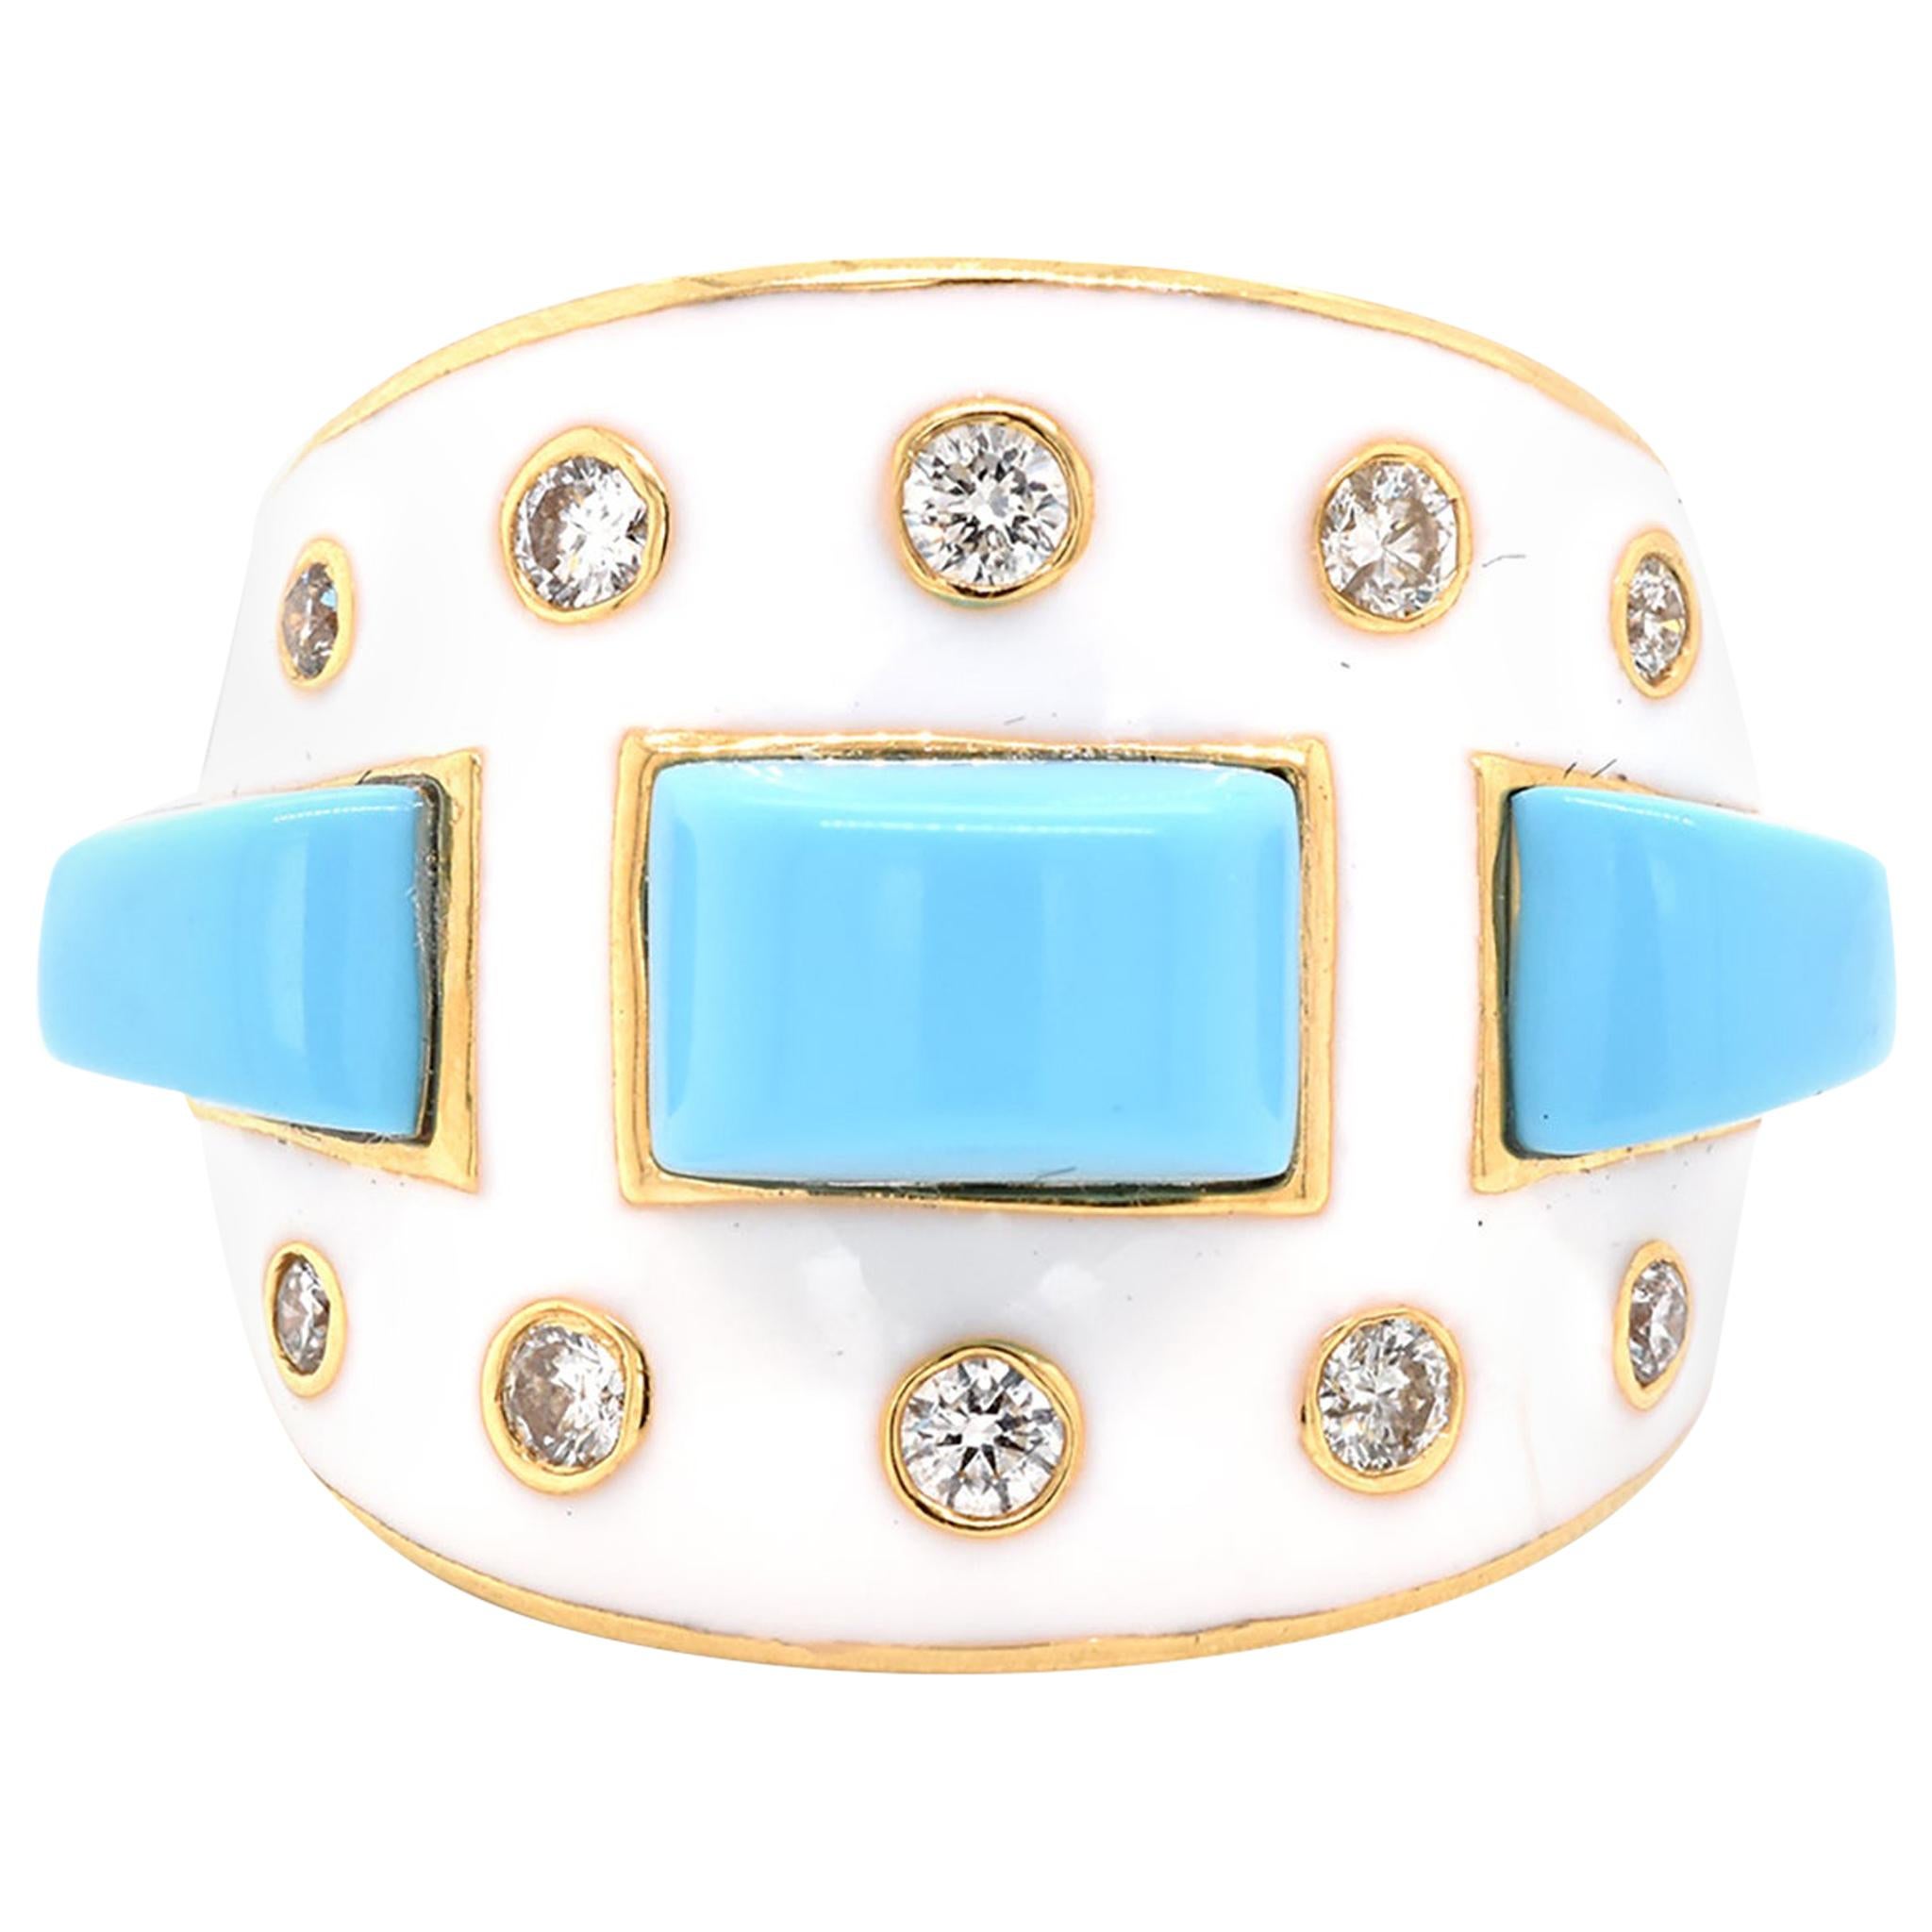 18 Karat Yellow Gold Deco Style White Enamel, Turquoise, and Diamond Ring